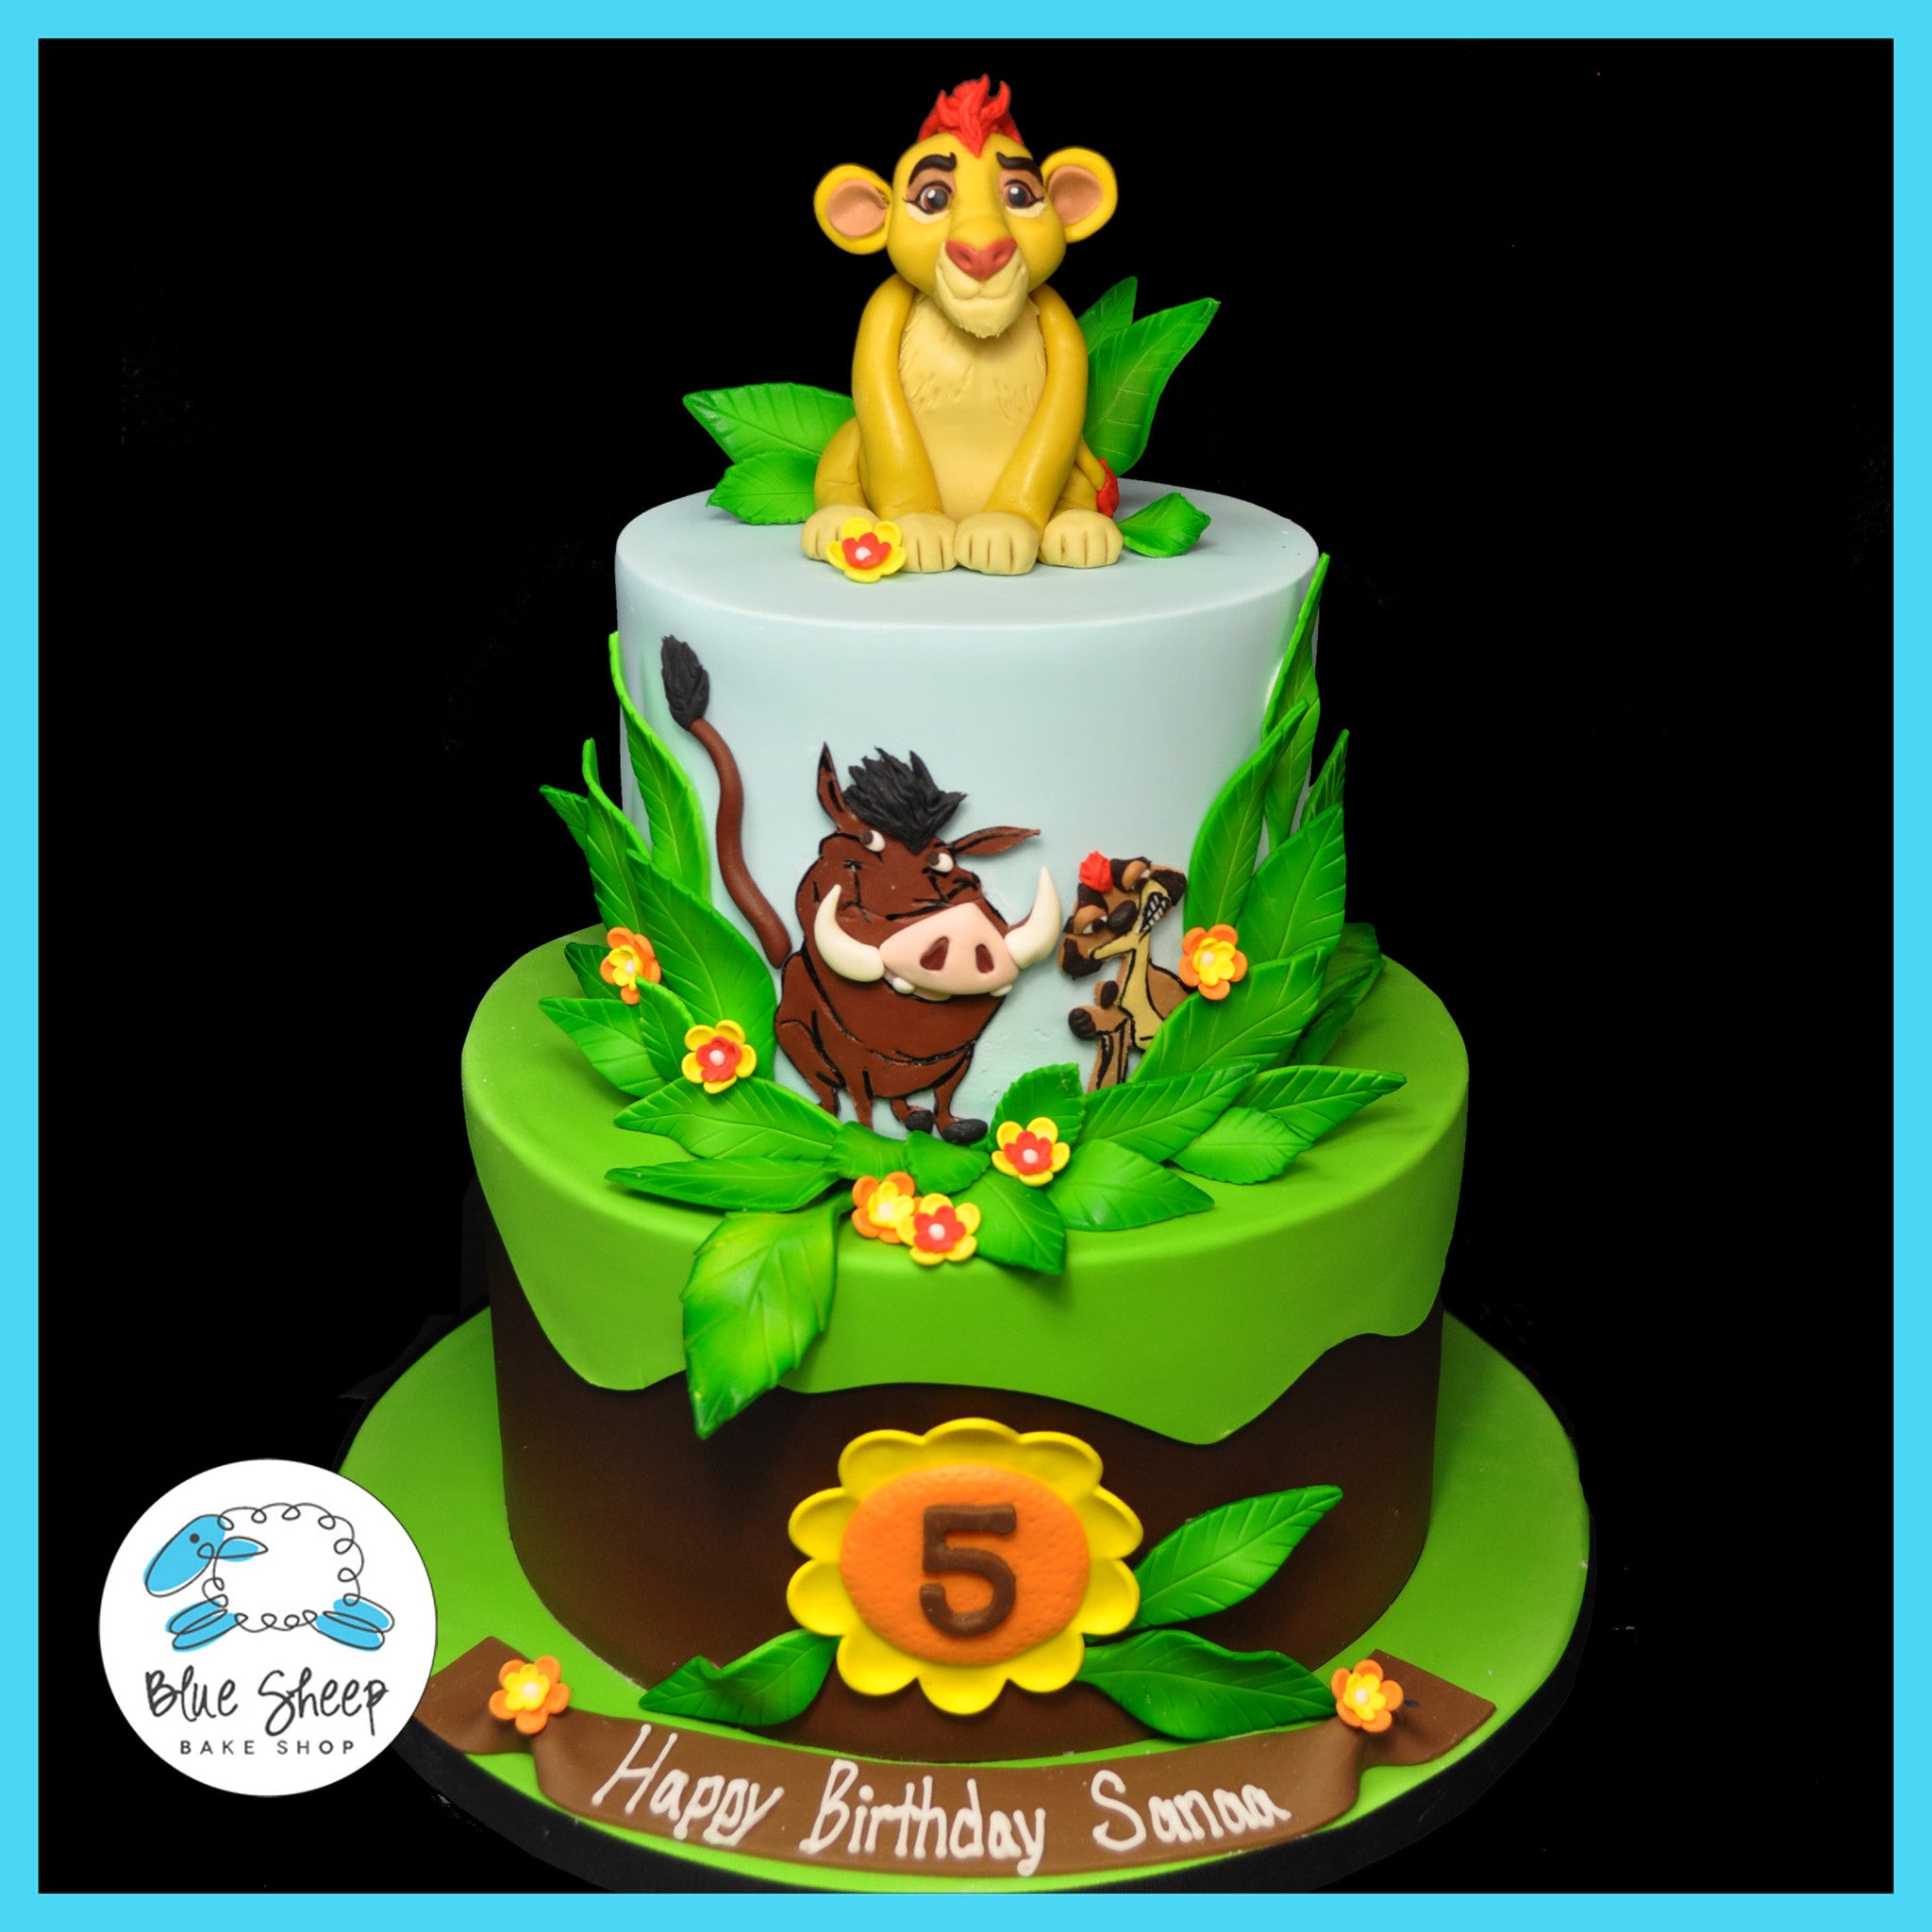 Lion King Birthday Cake – Blue Sheep Bake Shop